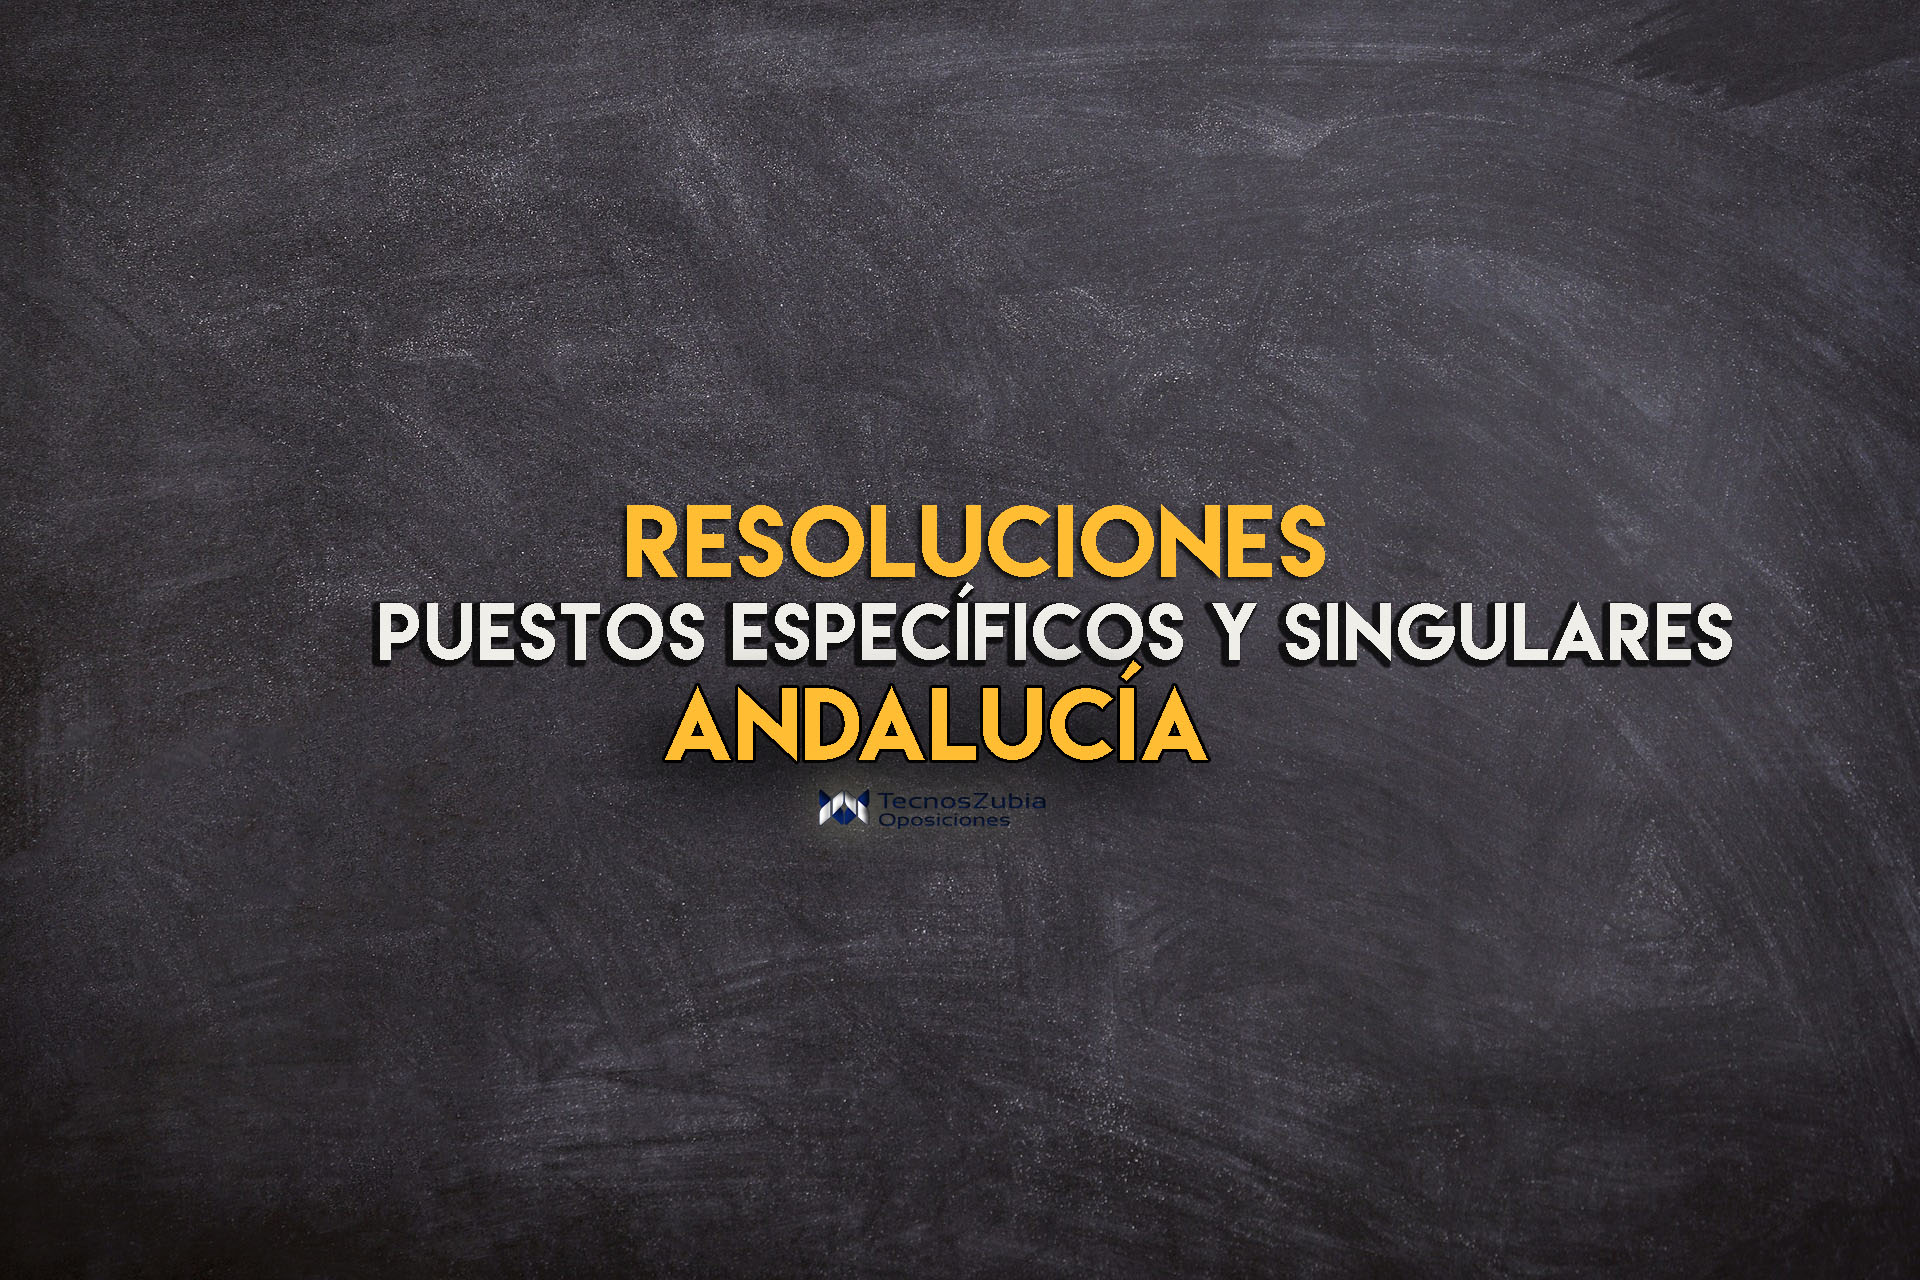 Andalucía resoluciones puestos específicos y singulares